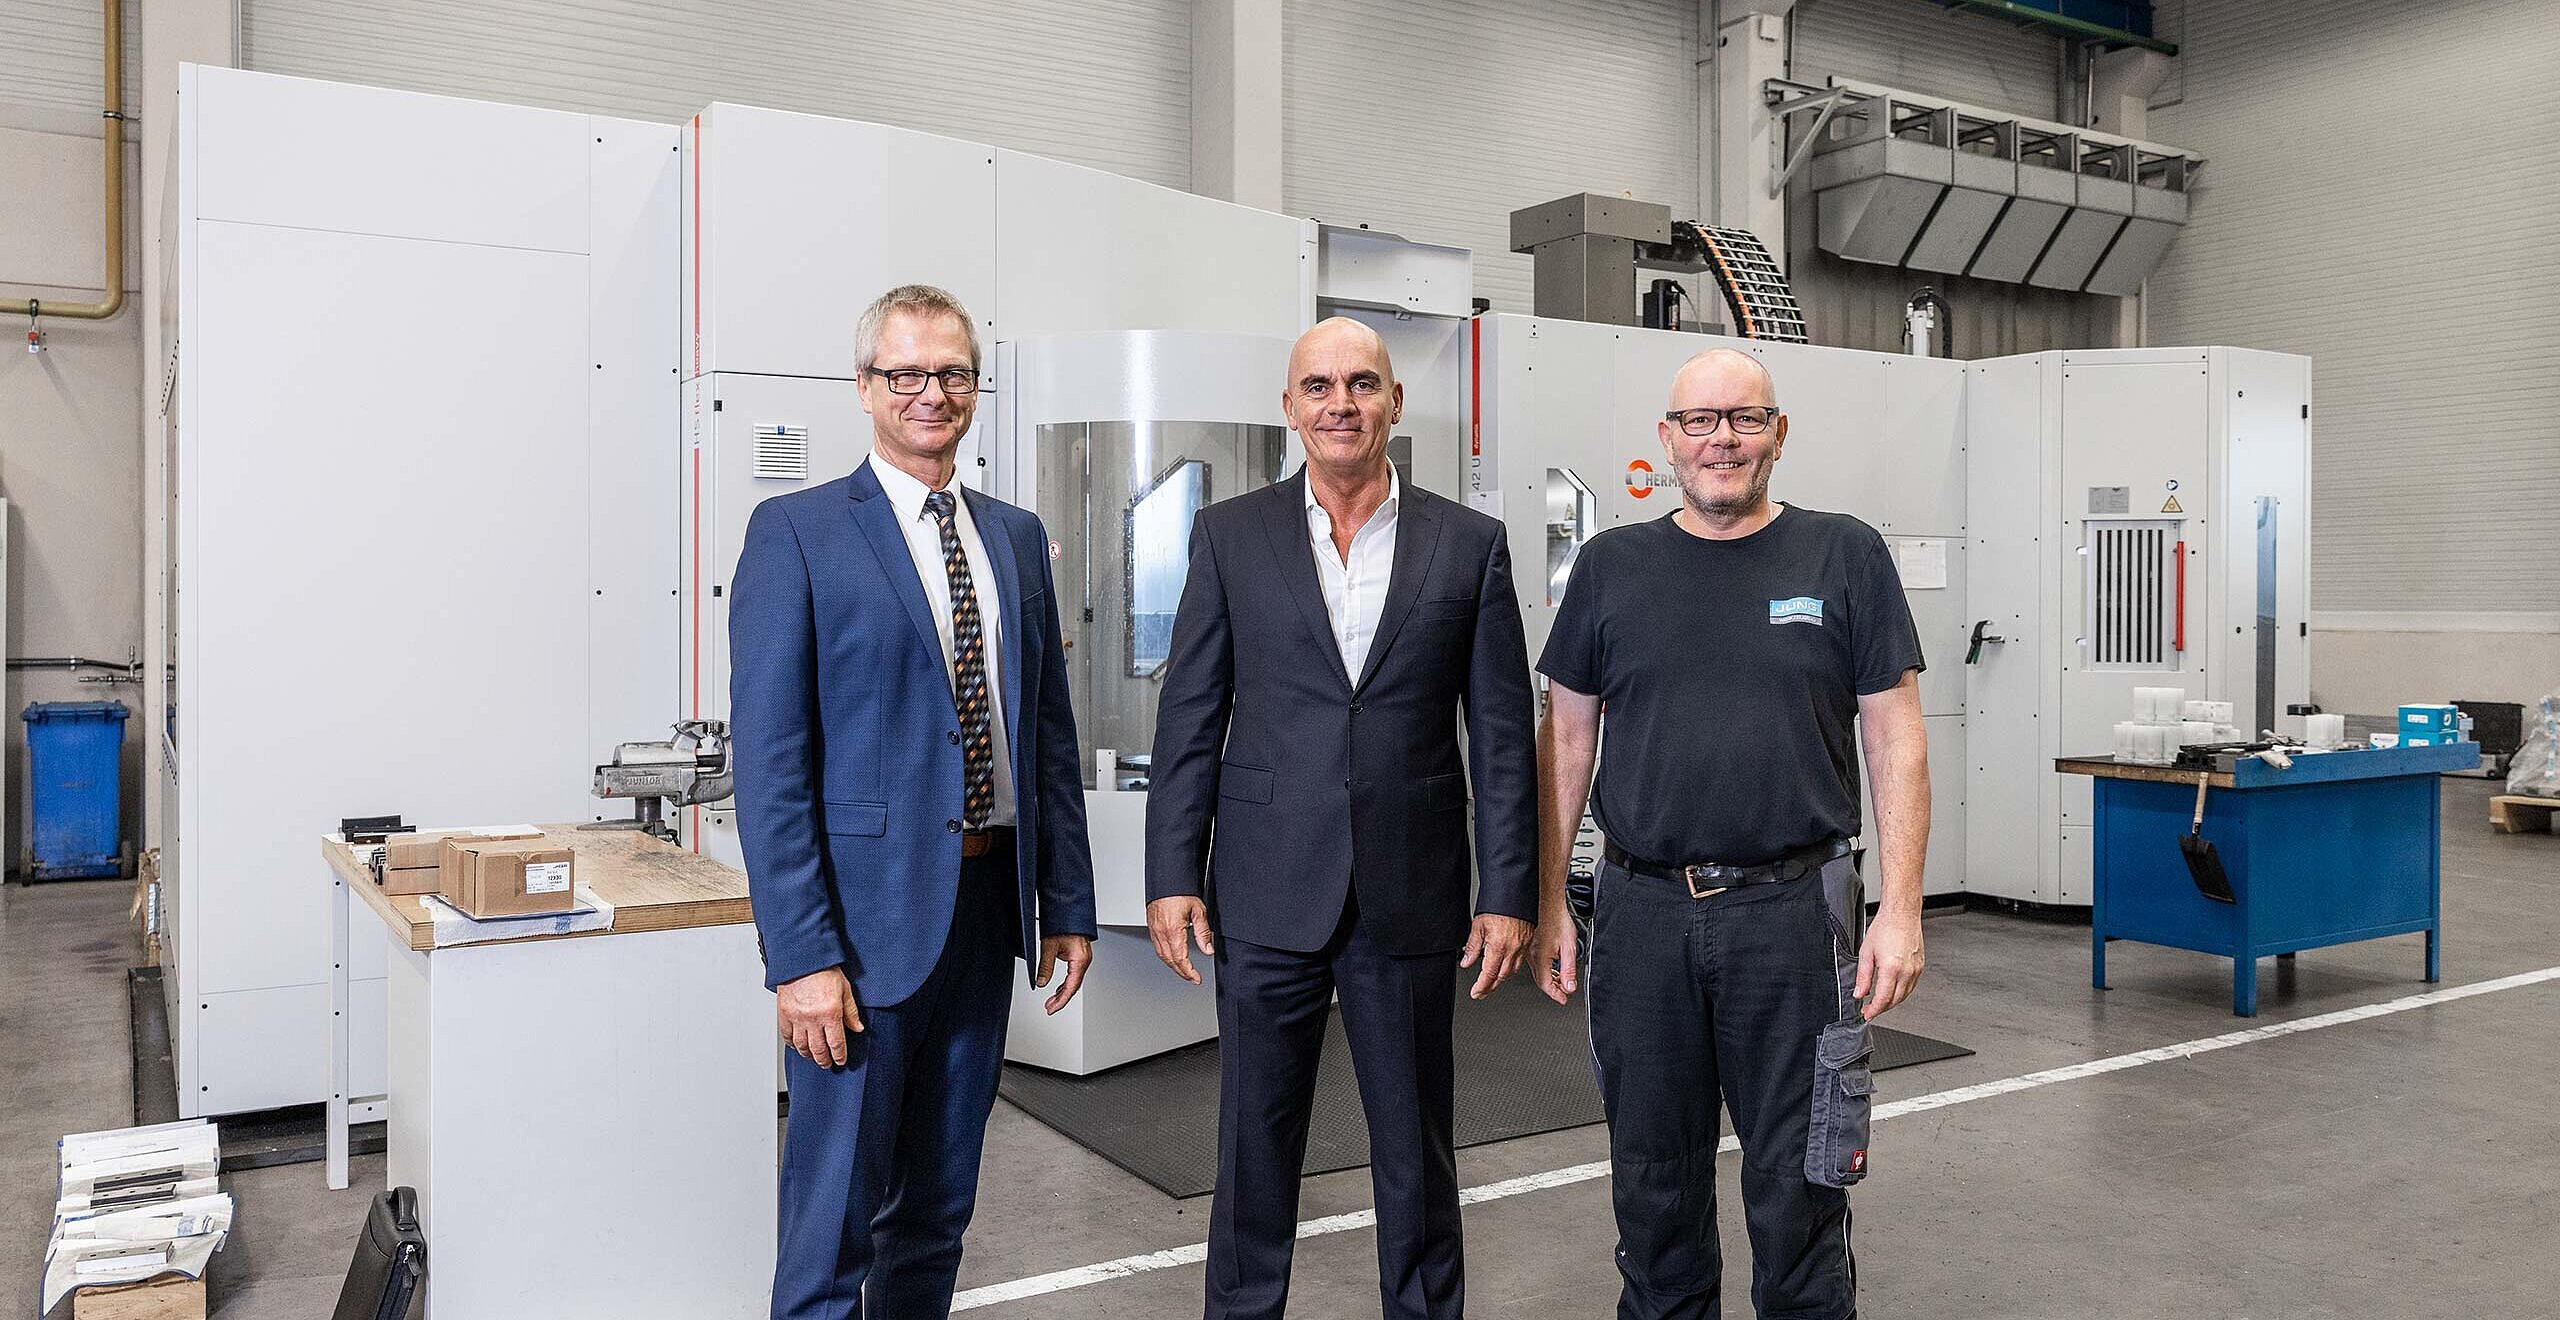 Andreas Glumpler, HPV Hermle Vertriebs GmbH, Matthias Jung, Geschäftsführer der Jung Werkzeugbau GmbH, und Thomas Faisz, verantwortlich für die mechanische Fertigung.